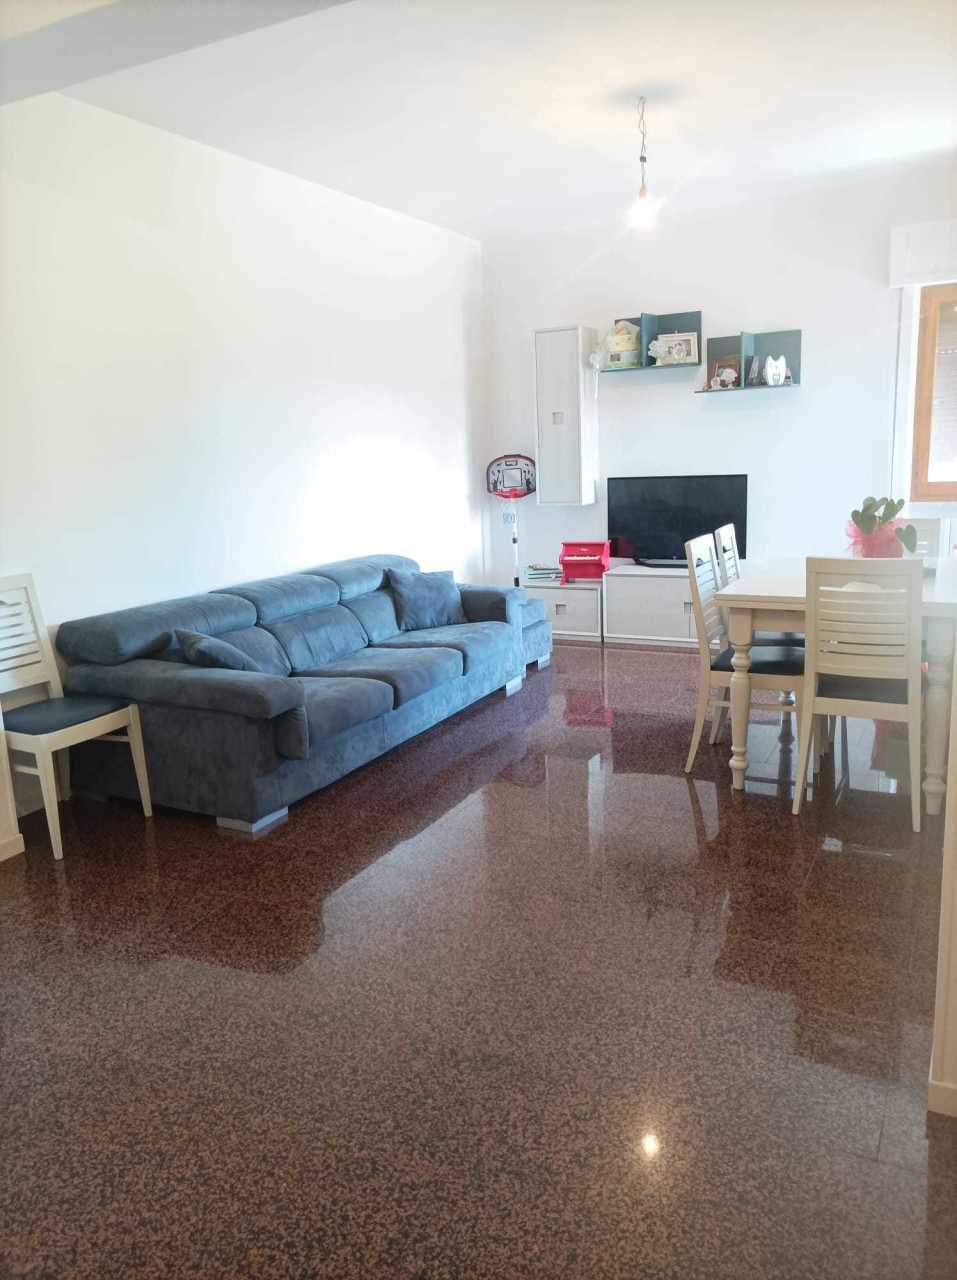 Appartamento in vendita a Castorano, 5 locali, prezzo € 99.000 | PortaleAgenzieImmobiliari.it